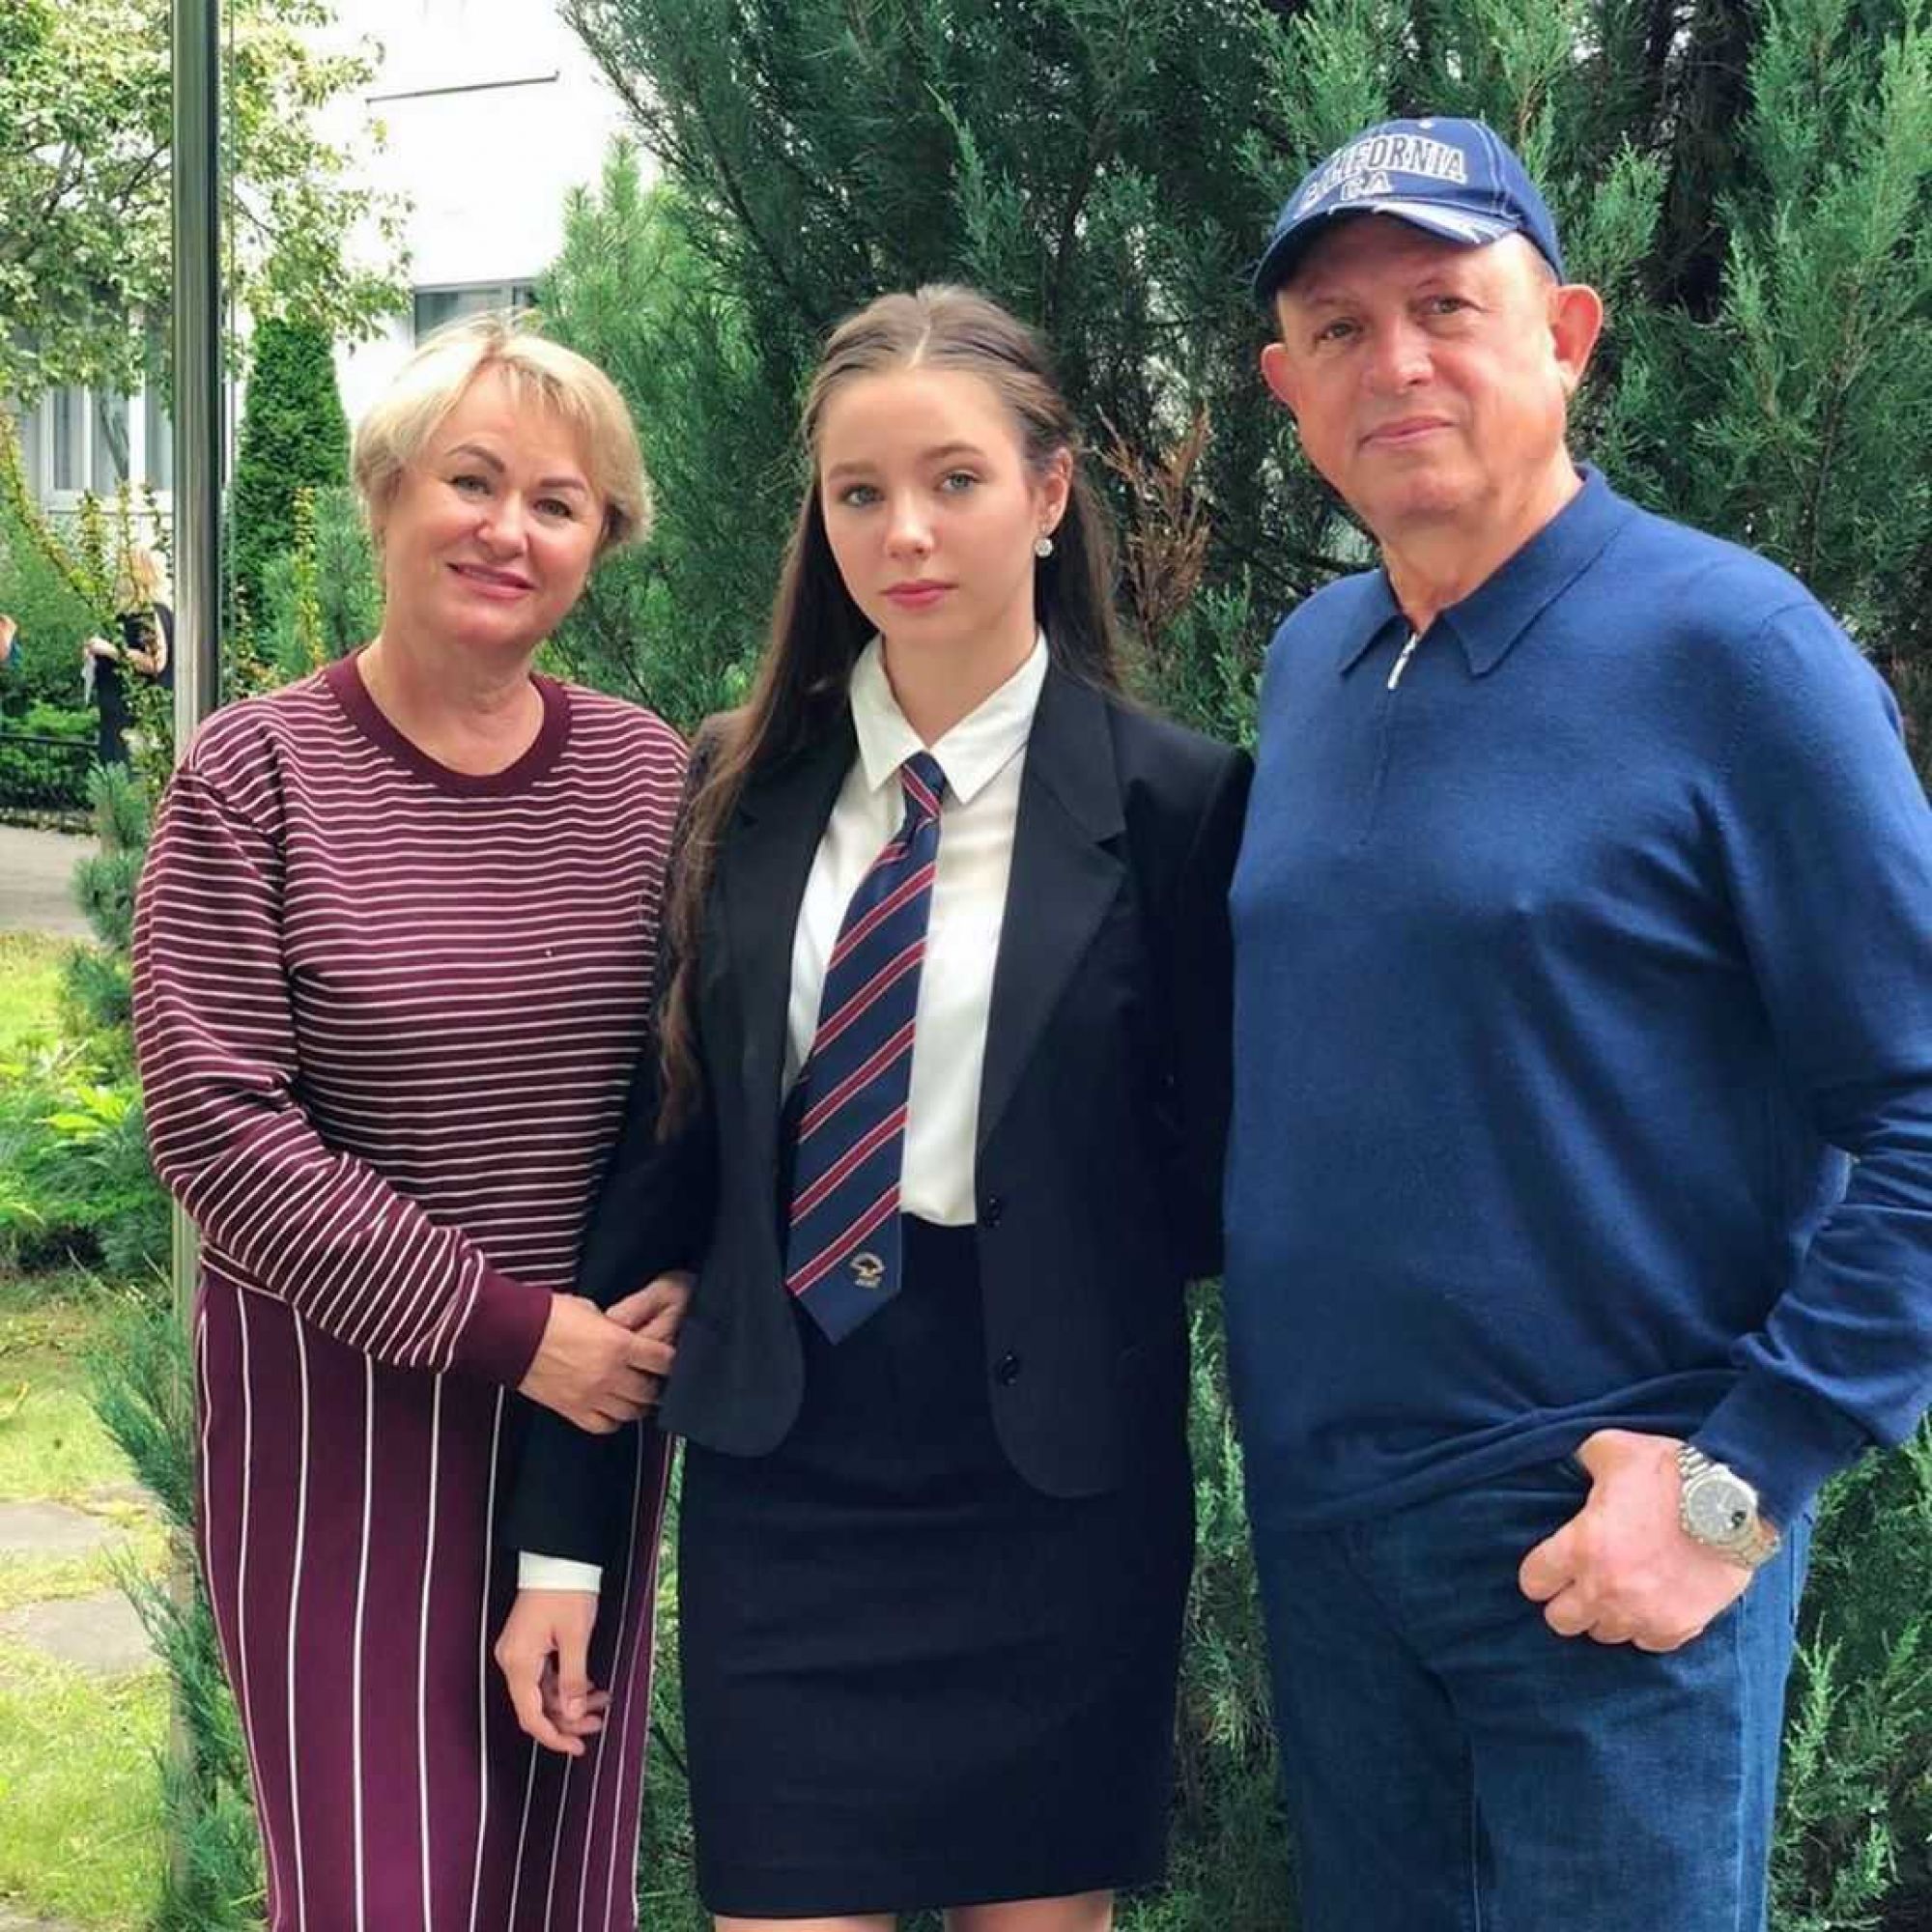 «Какая красивая и повзрослевшая!»: Школьное фото дочери Юлии Началовой взорвало Сеть